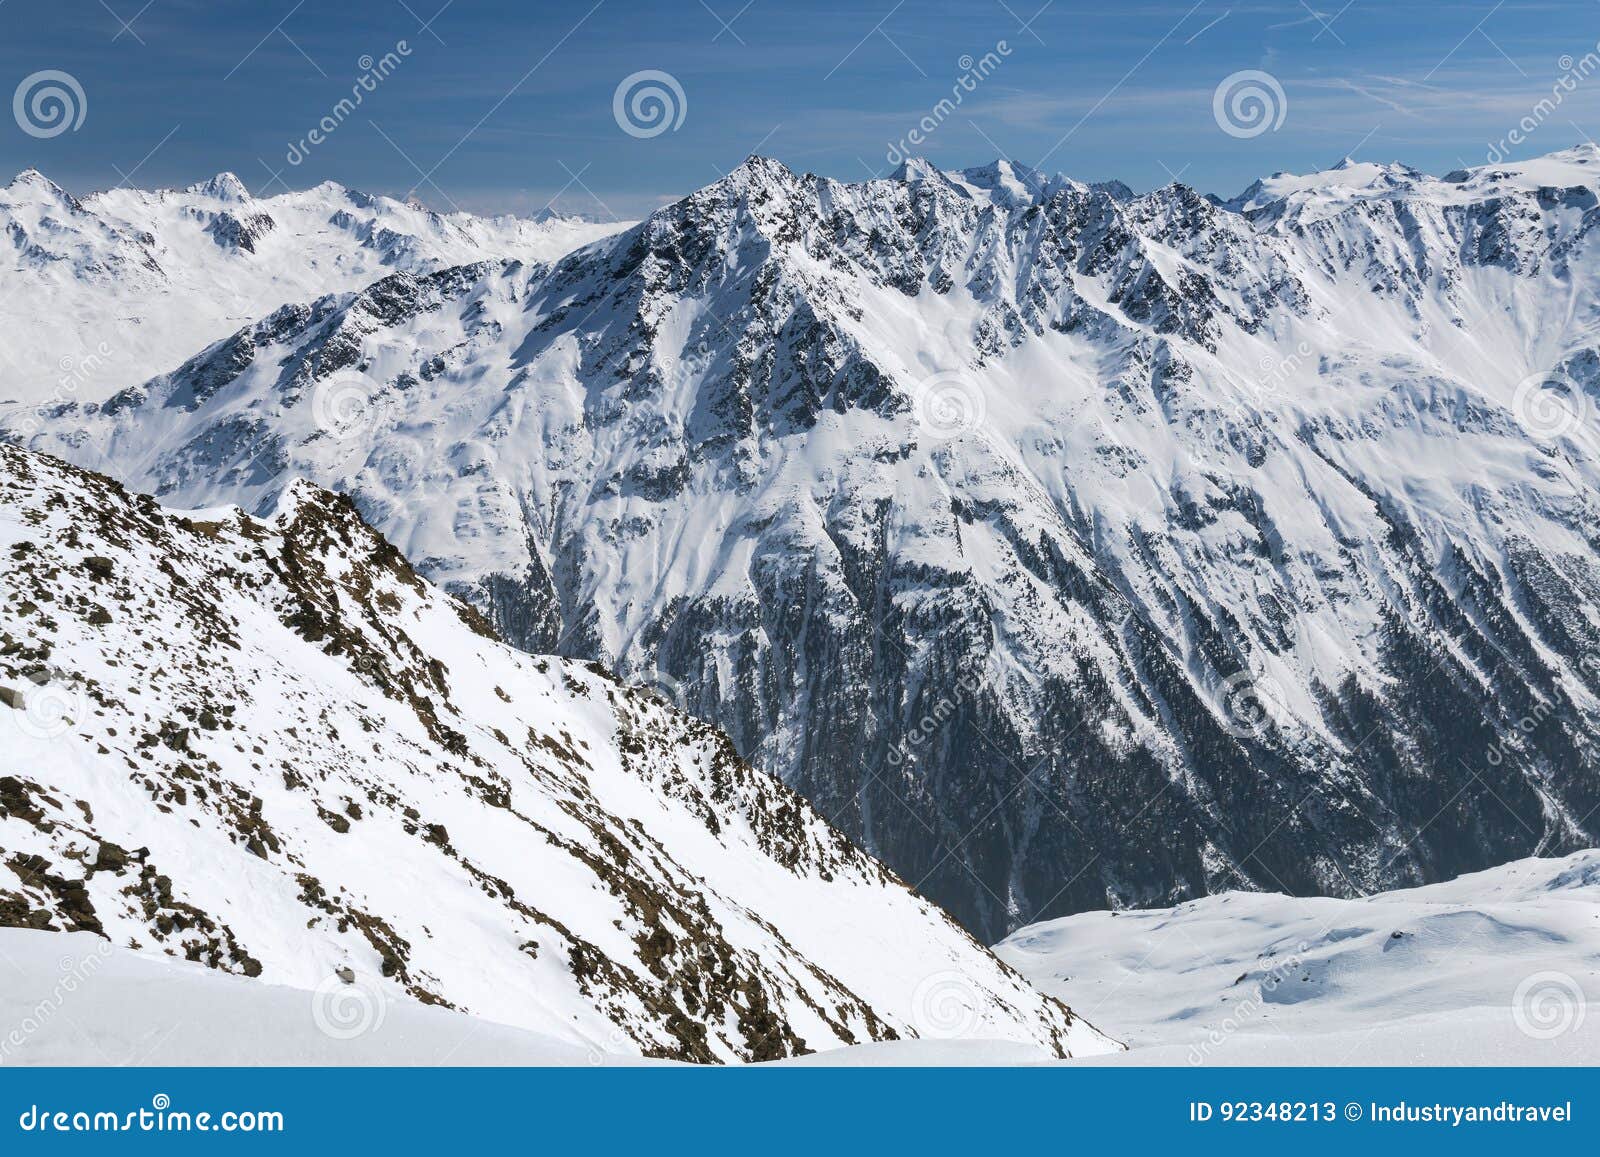 venter valley in winter, austria